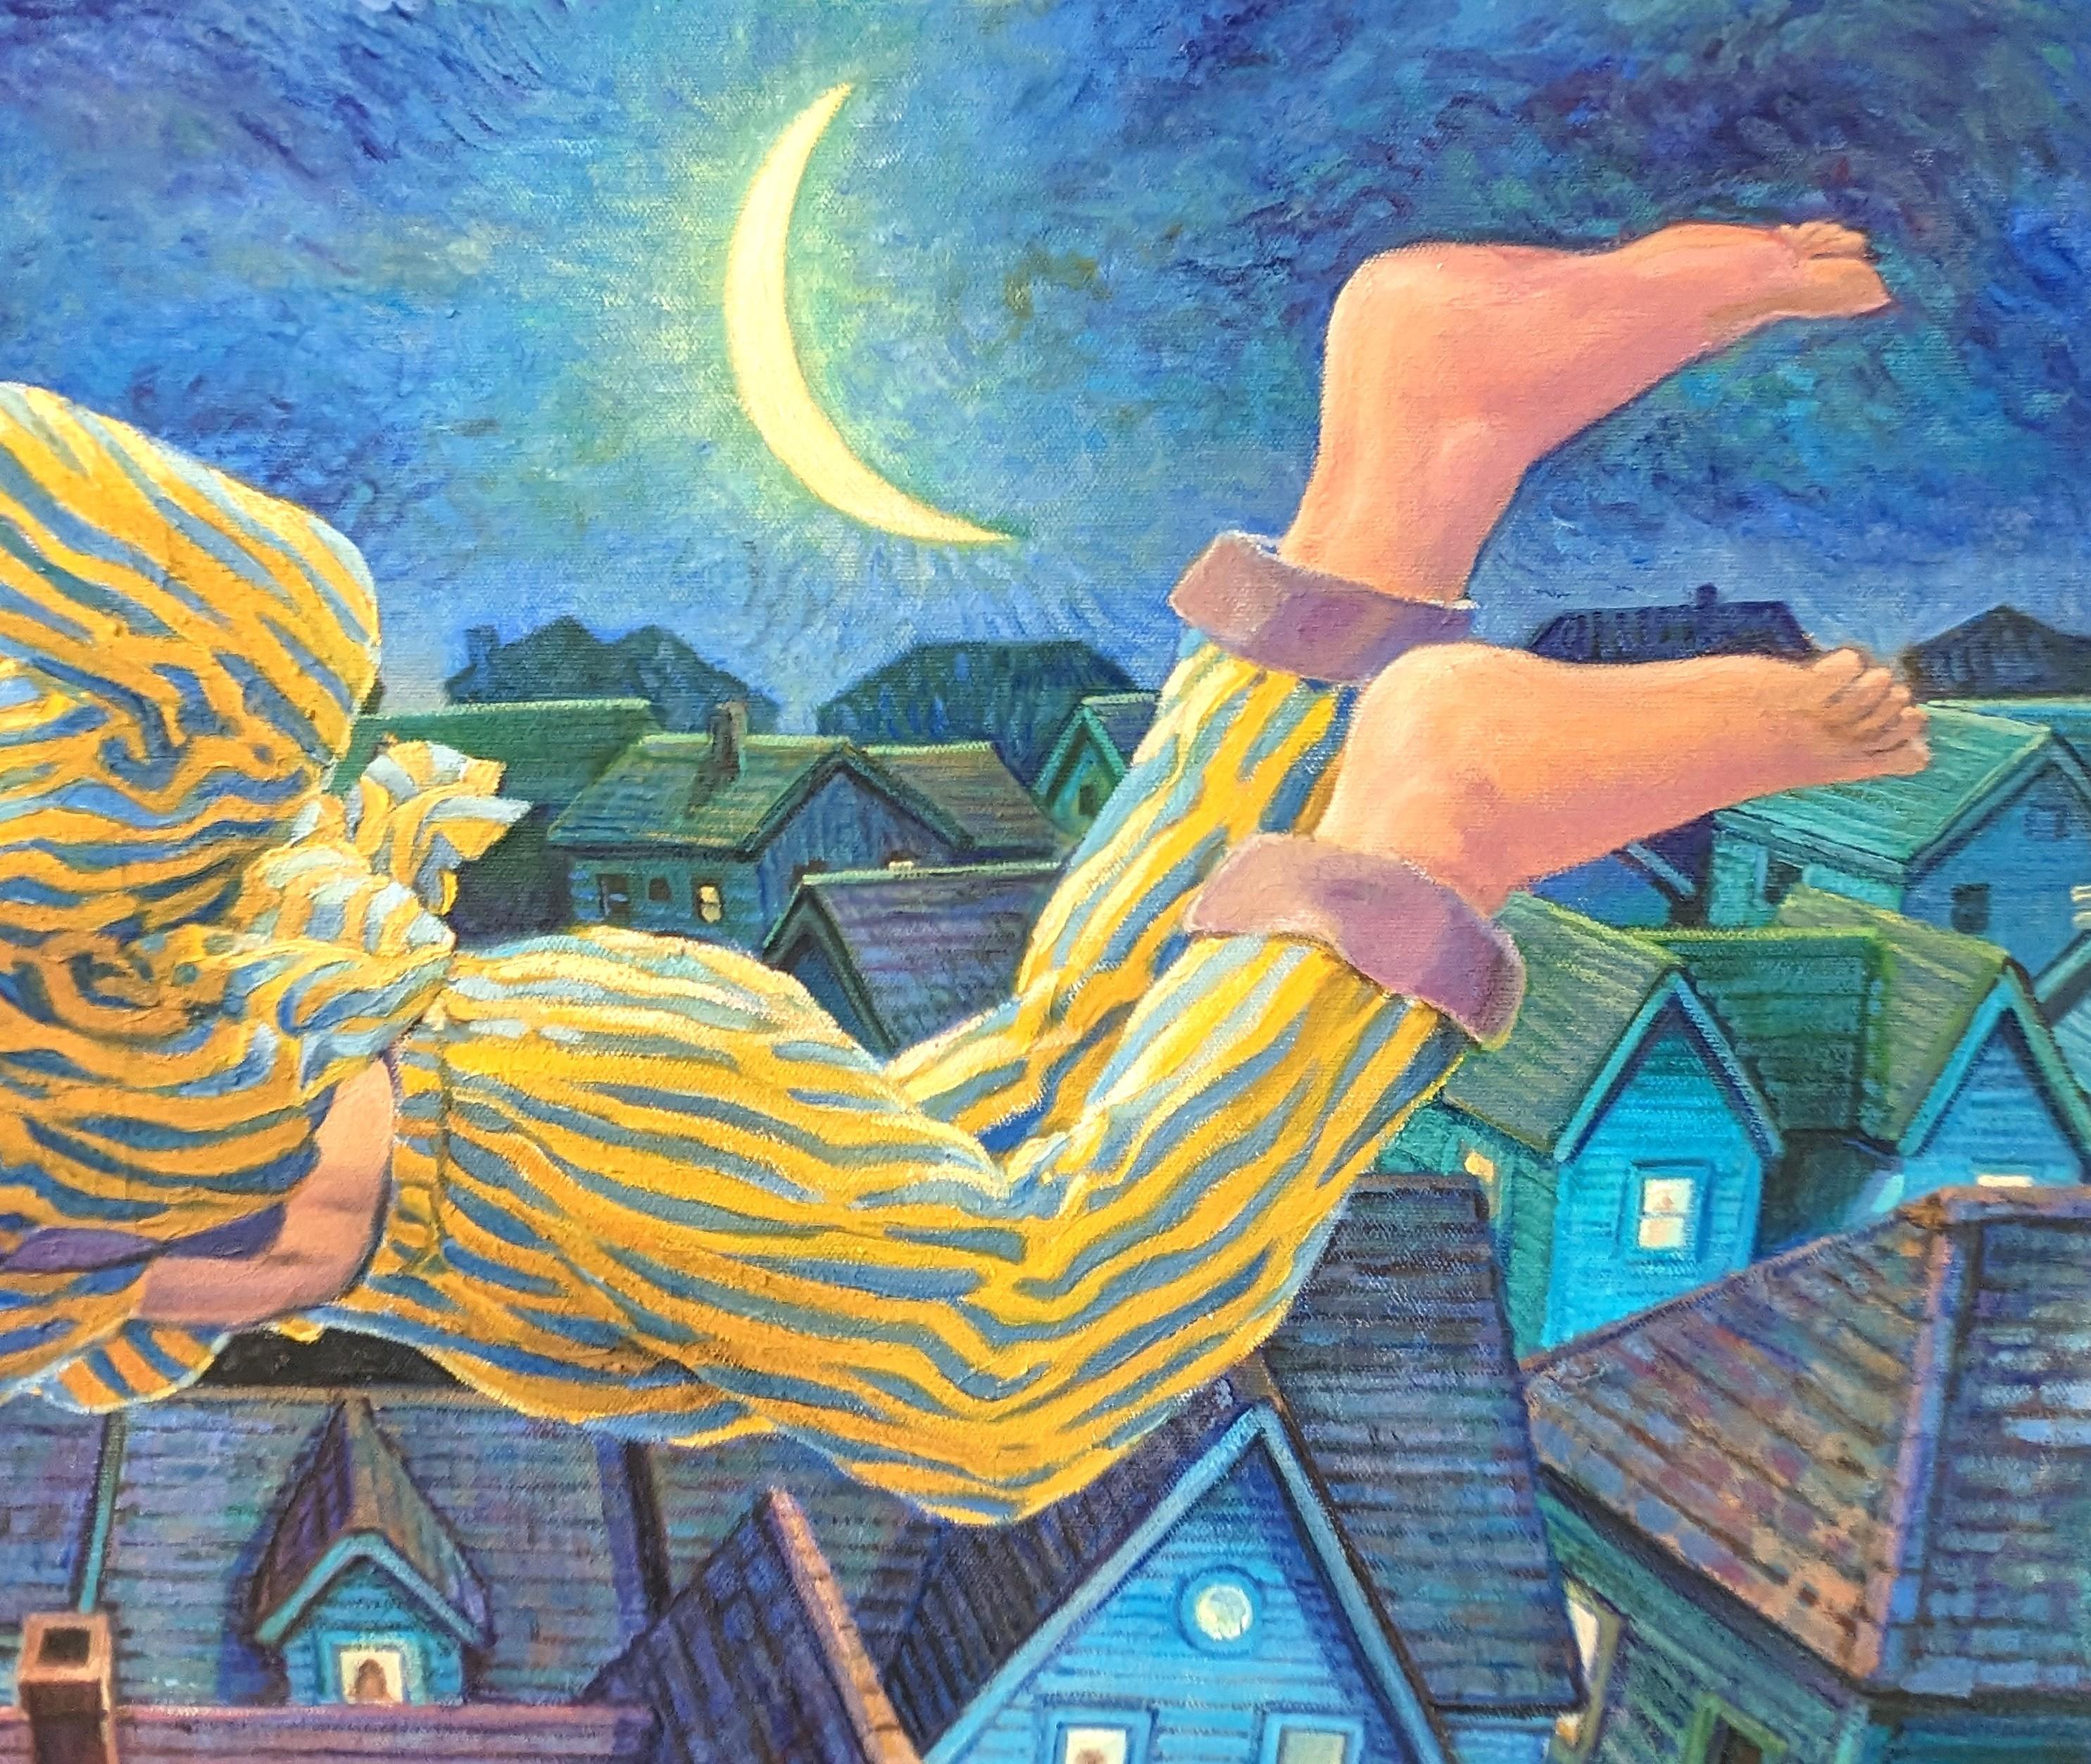 Buntes, blaustichiges Gemälde des zeitgenössischen Künstlers Henry David Potwin. Das Werk zeigt eine männliche Figur im Pyjama, die über einer verschlafenen Stadtszene schwebt. Signiert in der linken unteren Ecke der Vorderseite. Rückseitig betitelt